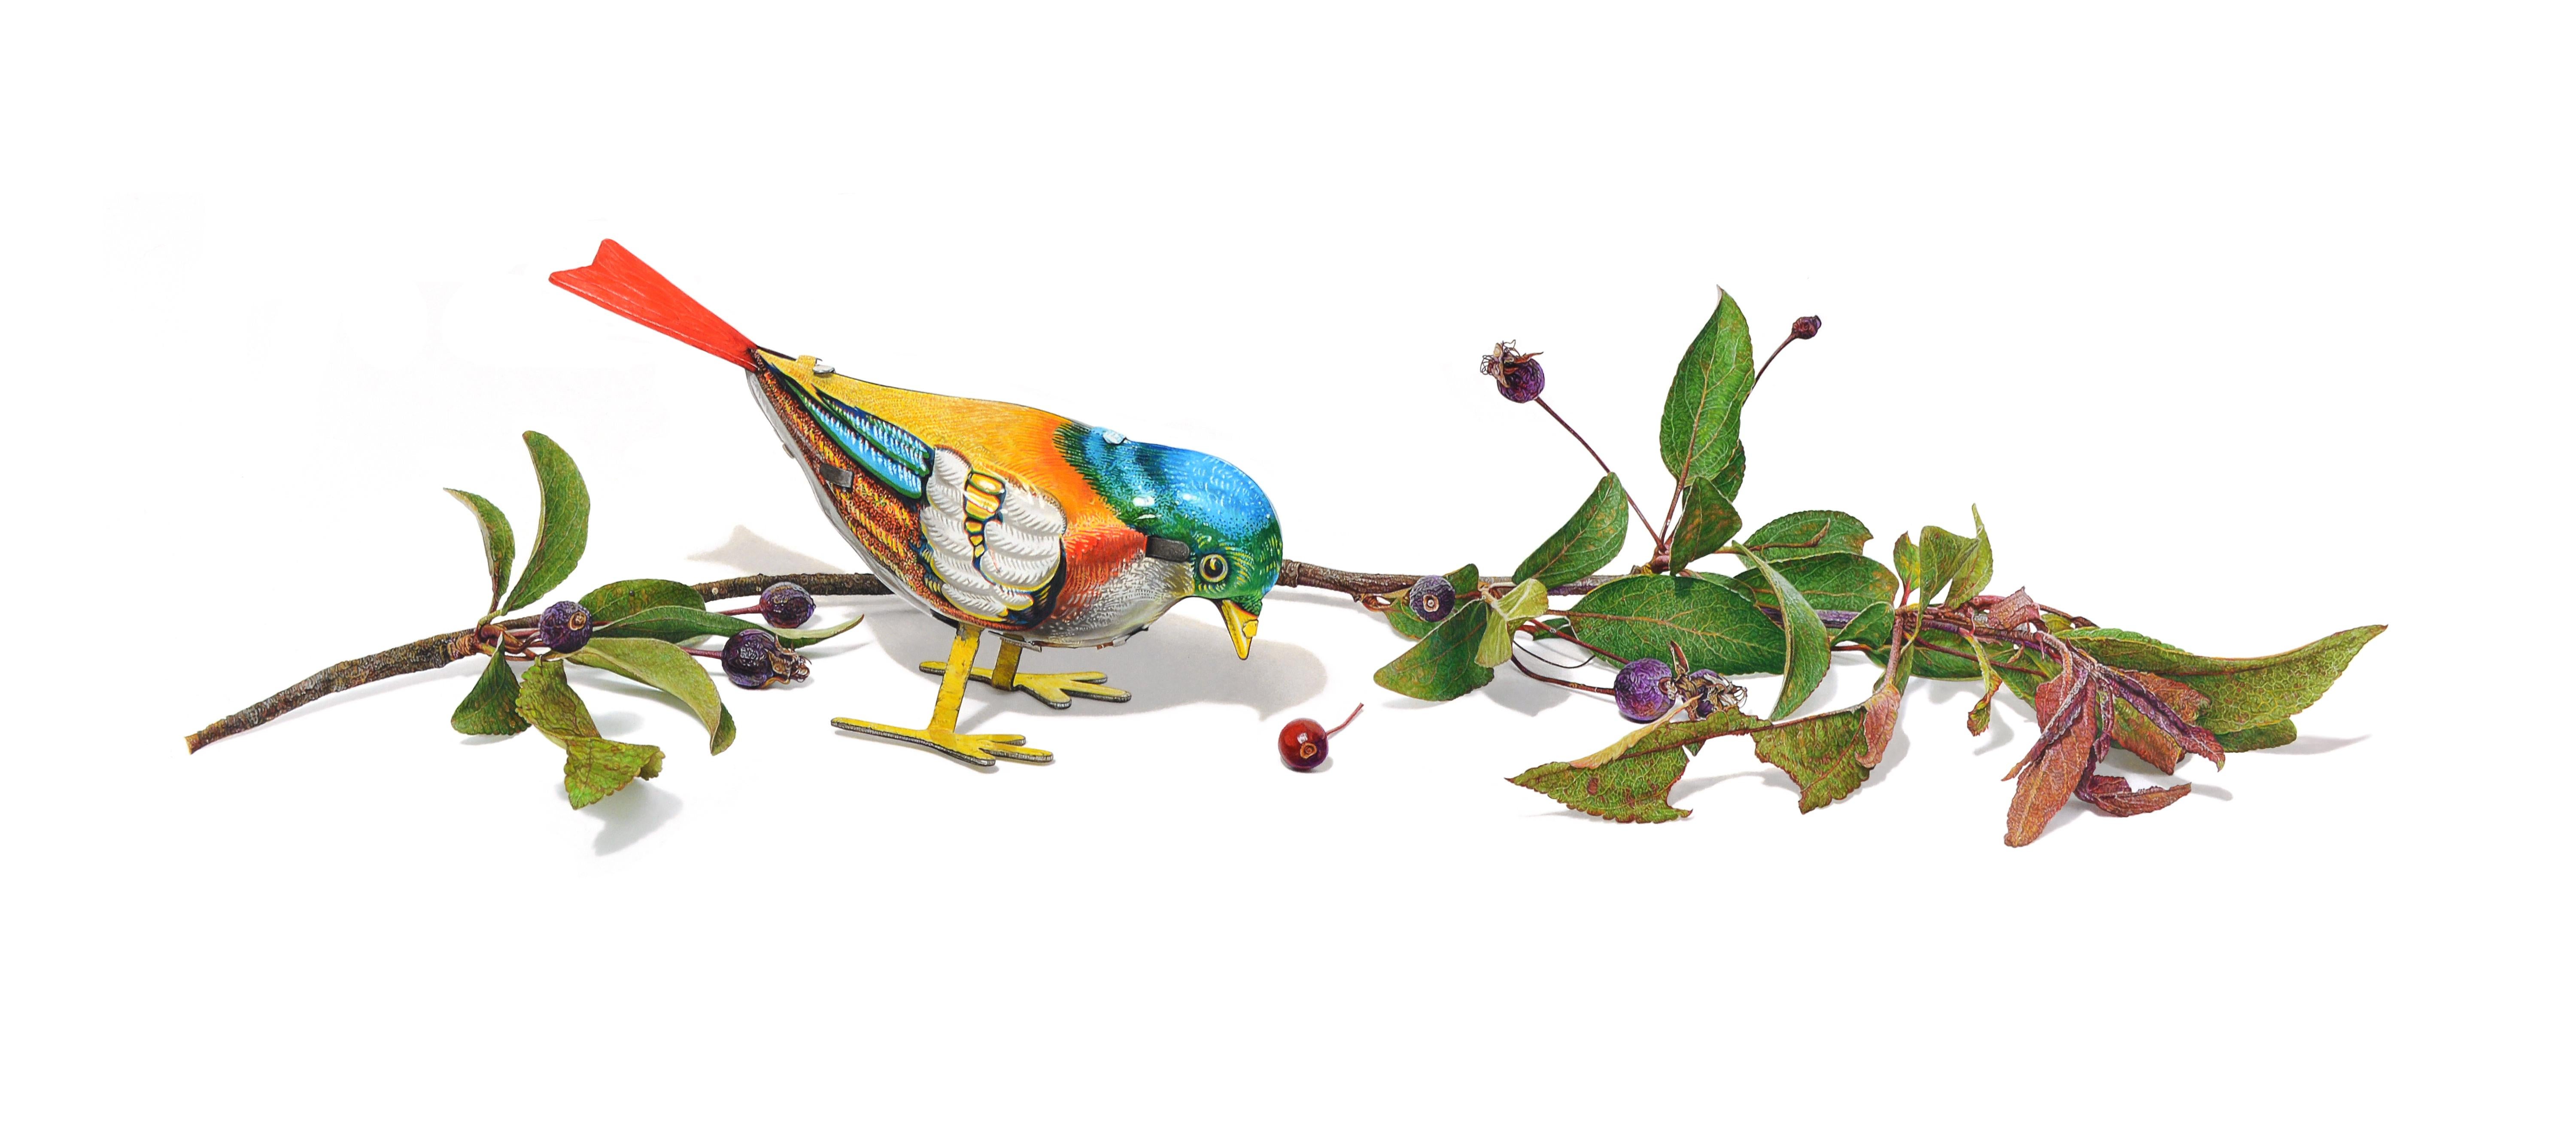 David Morrison, Oiseau à remontoir n° 5, dessin d'animal au crayon en couleur hyperréaliste